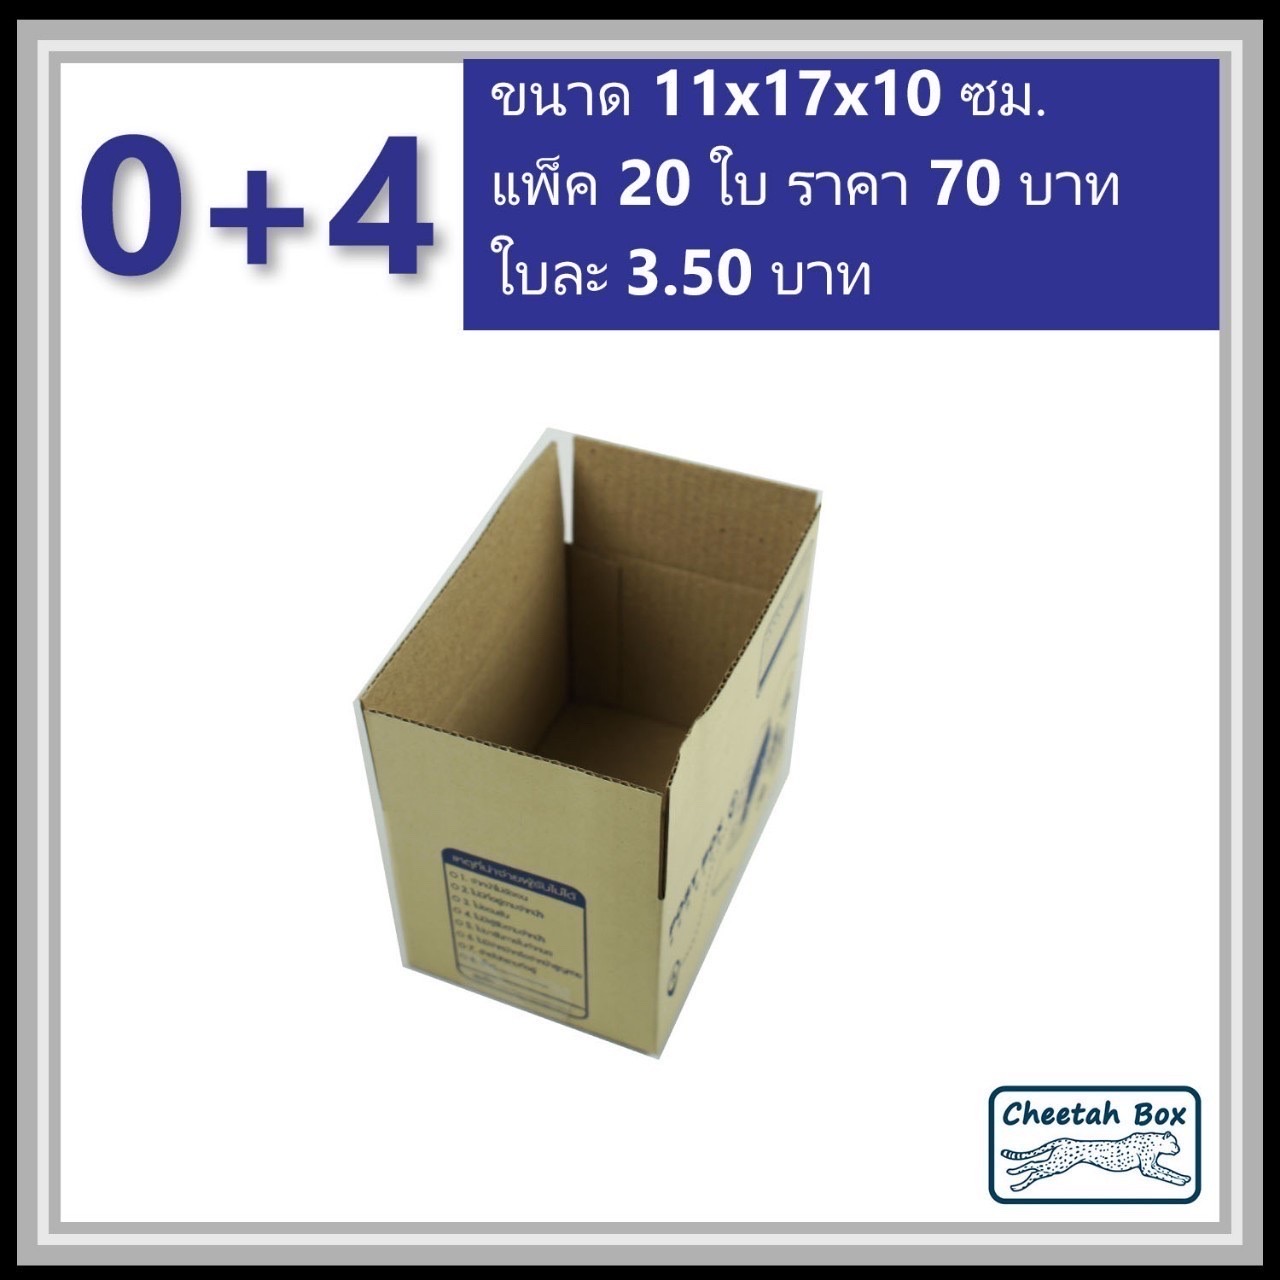 กล่องไปรษณีย์ 0+4 (Cheetah Box ขนาด 11*17*10 CM)